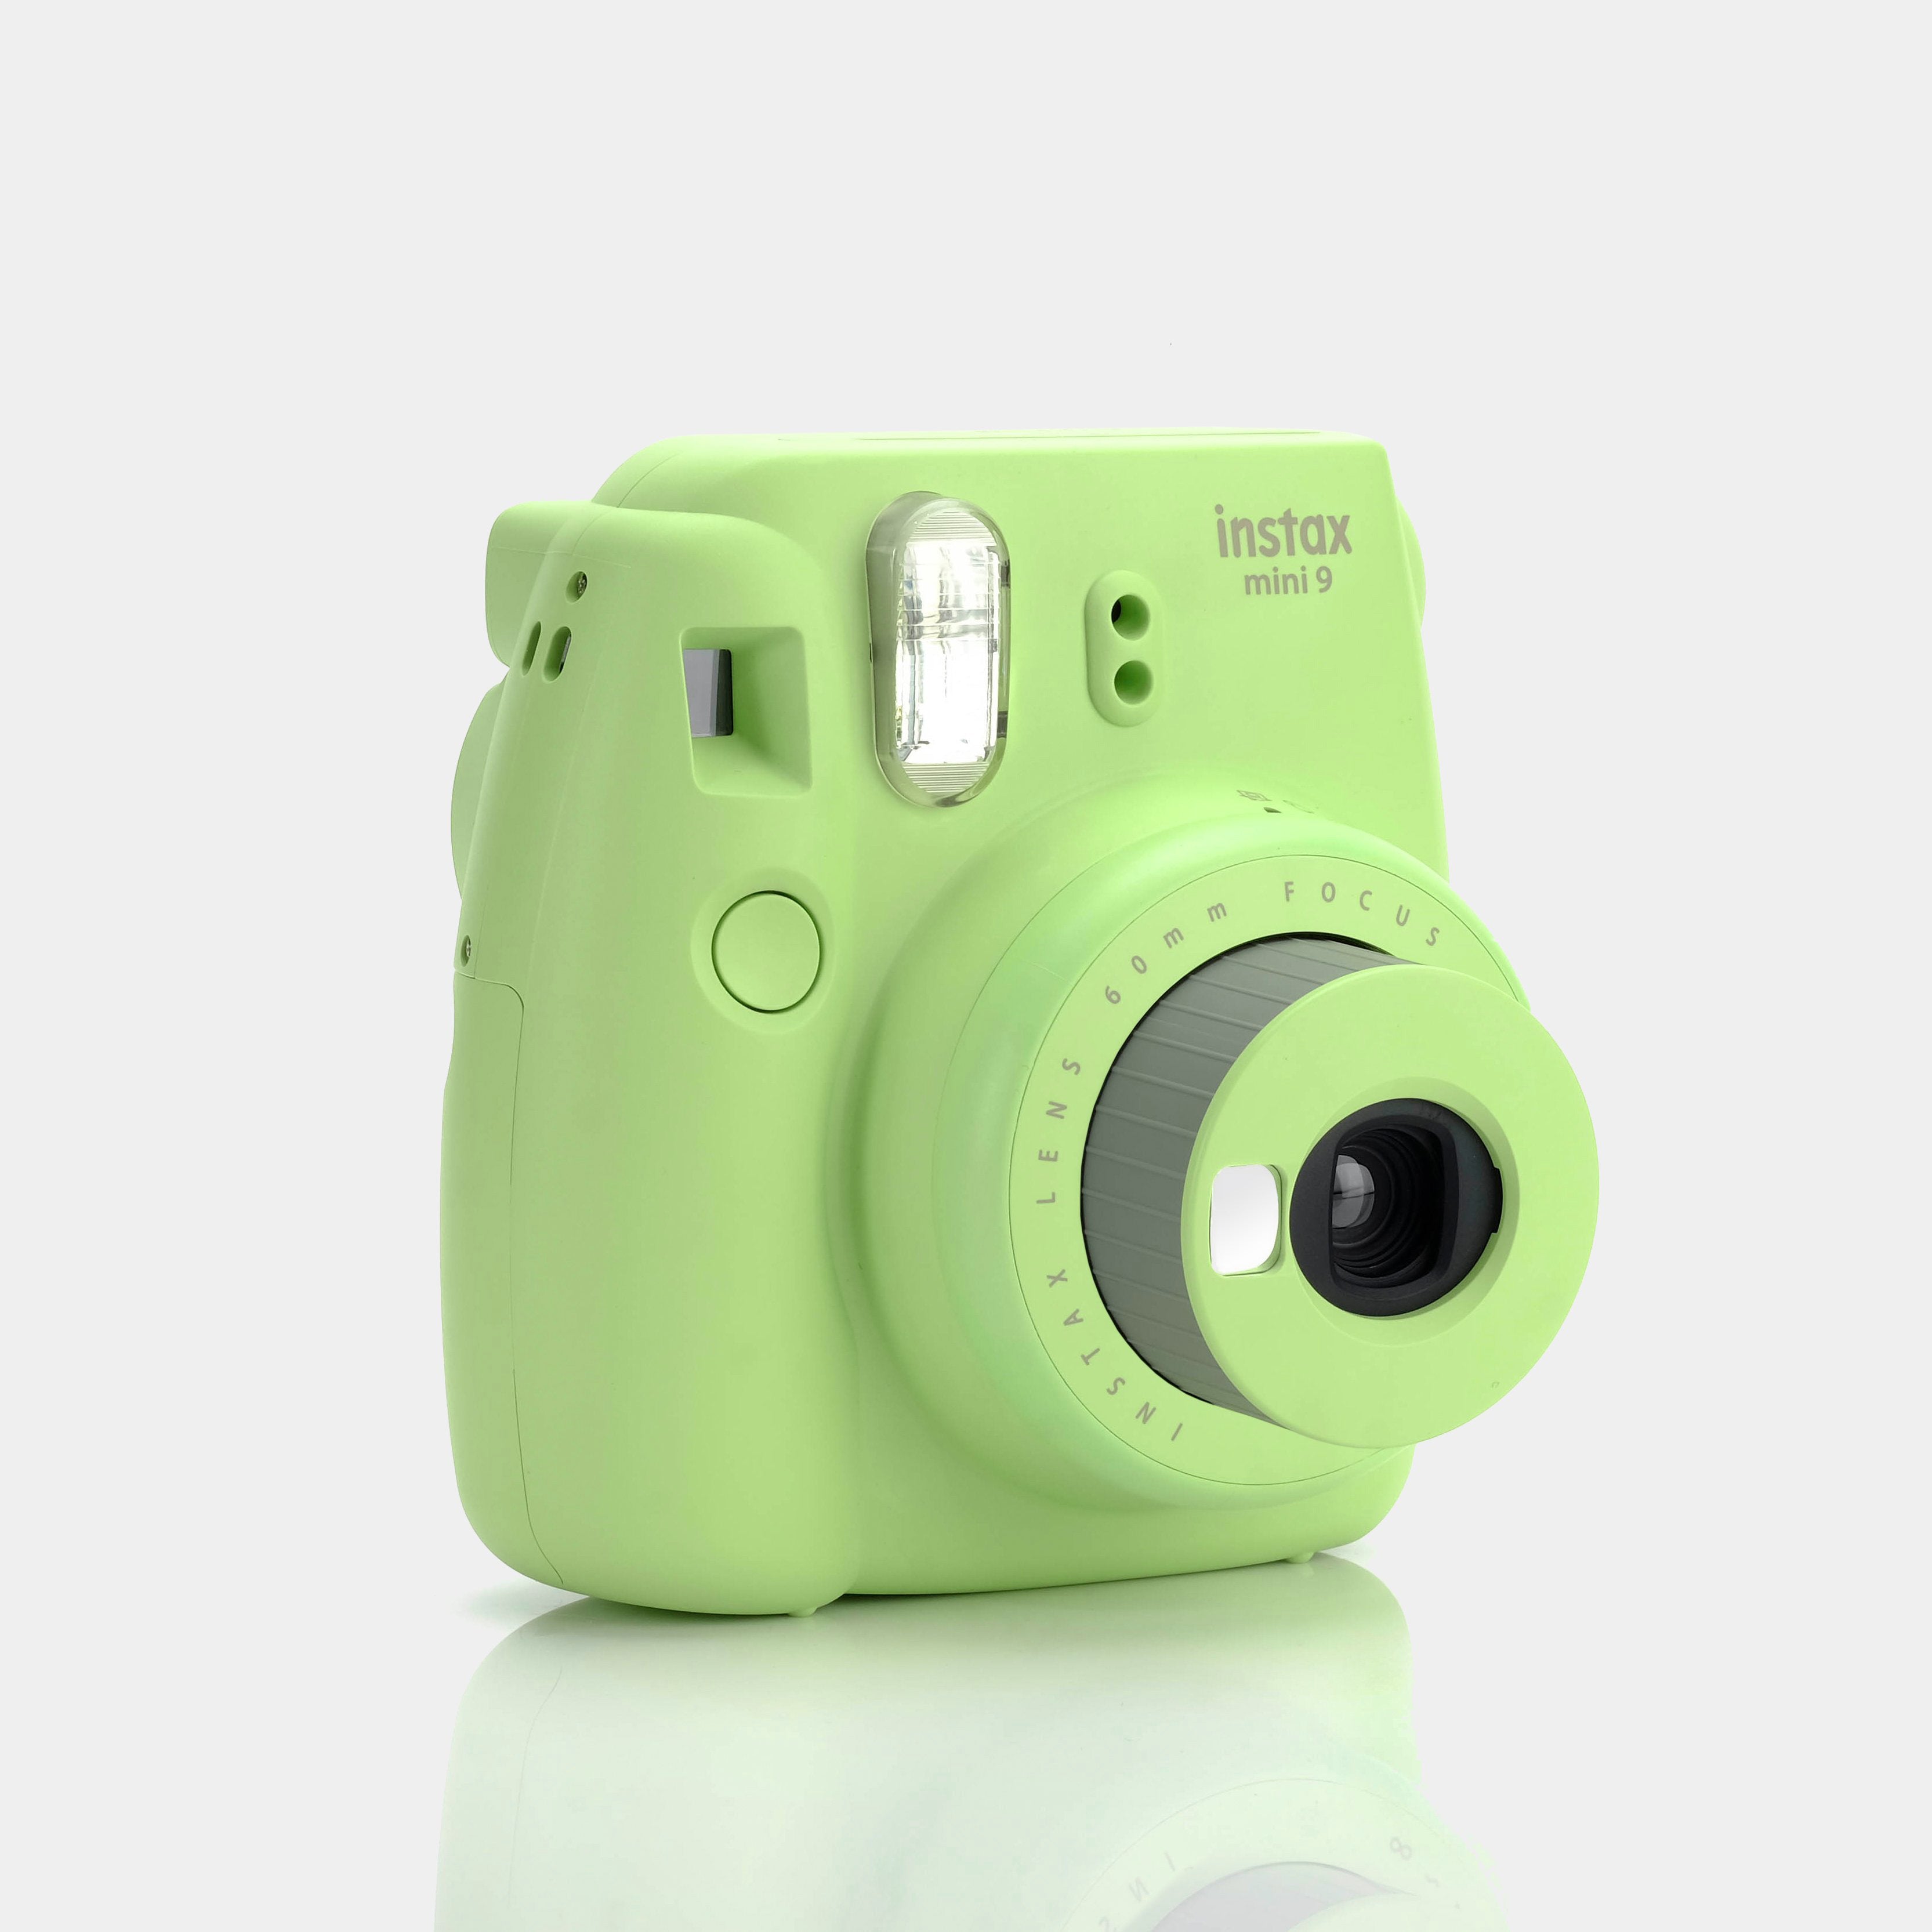 Fujifilm Instax Mini 9 Lime Green Instant Film Camera - Refurbished